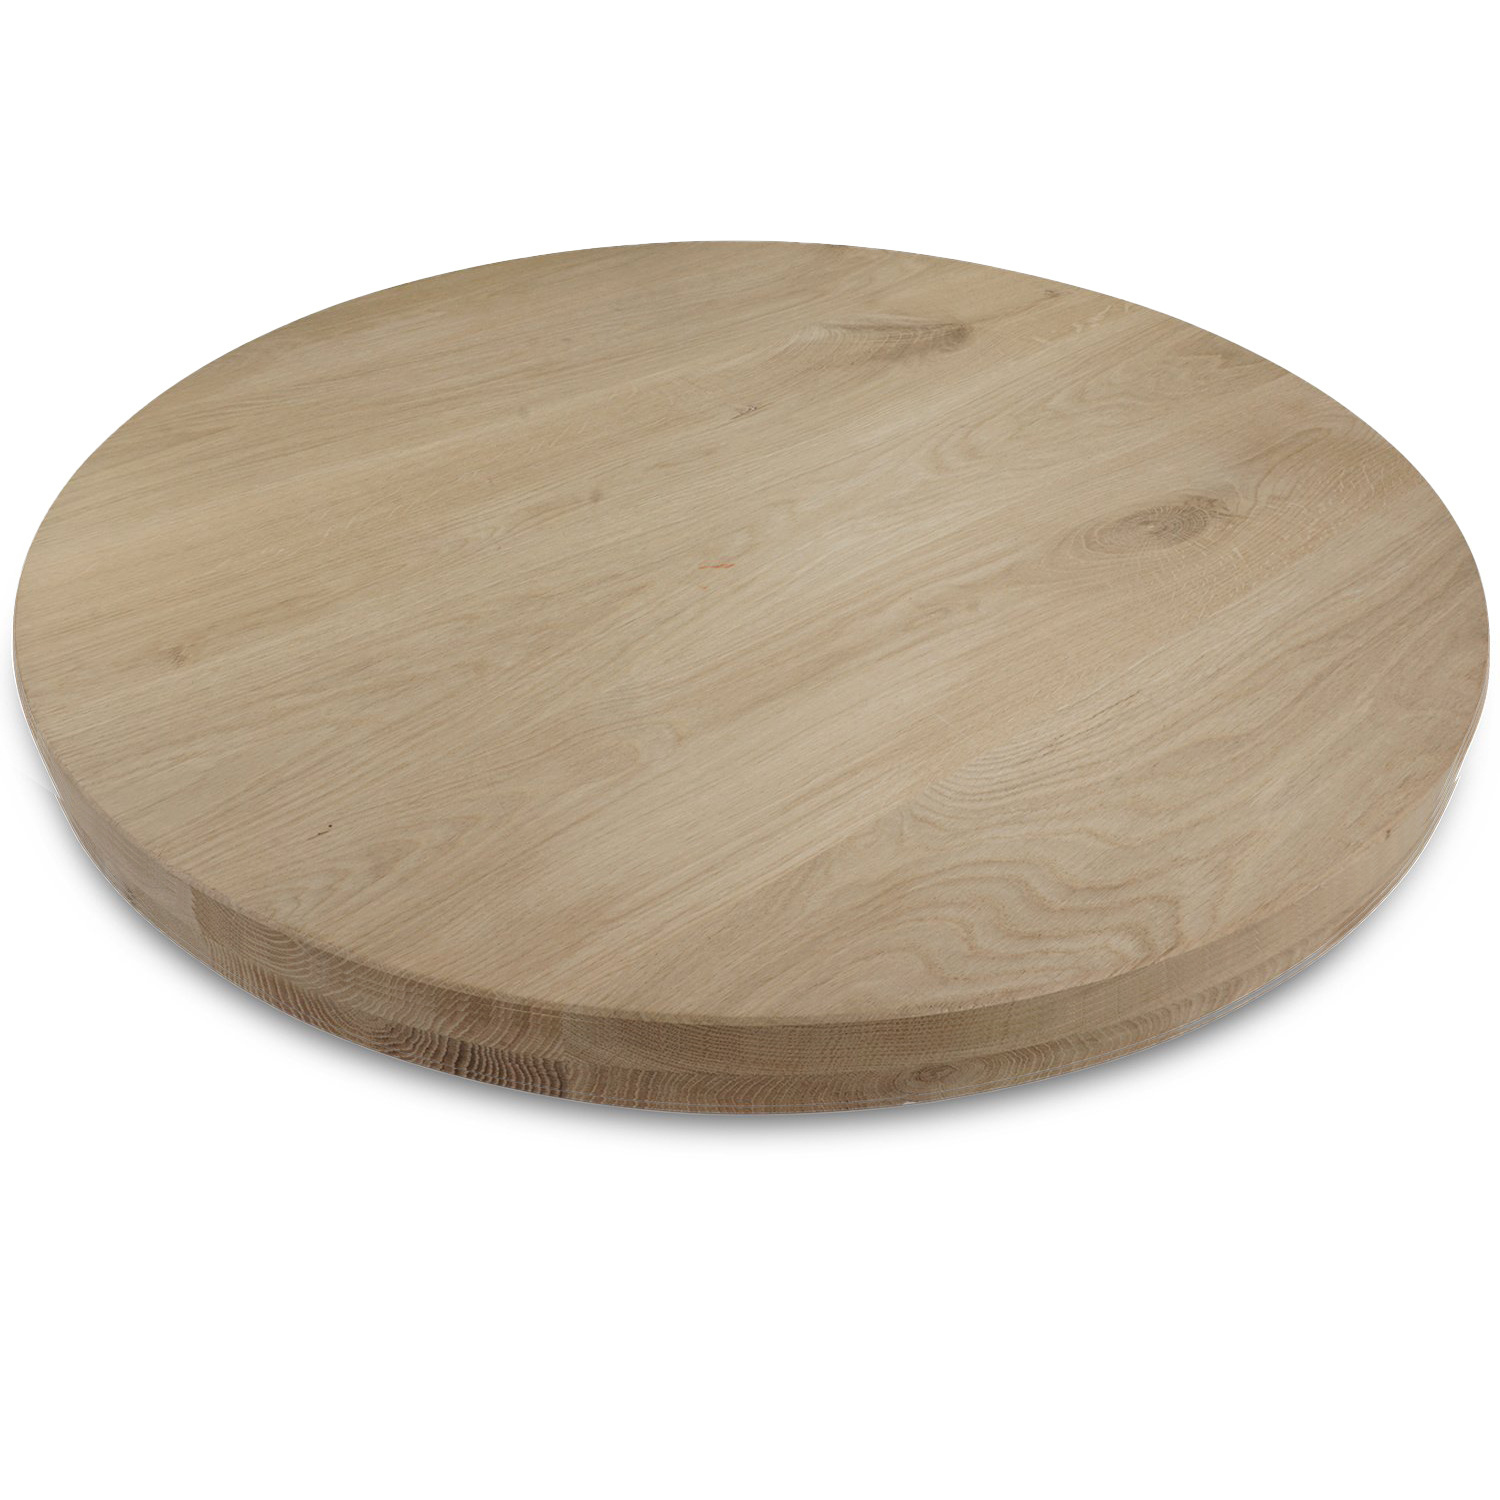  Tischplatte Eiche rund nach Maß - 8 cm dick (2-lagig) - Eichenholz A-Qualität - Durchmesser: 30 - 180 cm - Eiche Tischplatte rund massiv - verleimt & künstlich getrocknet (HF 8-12%)